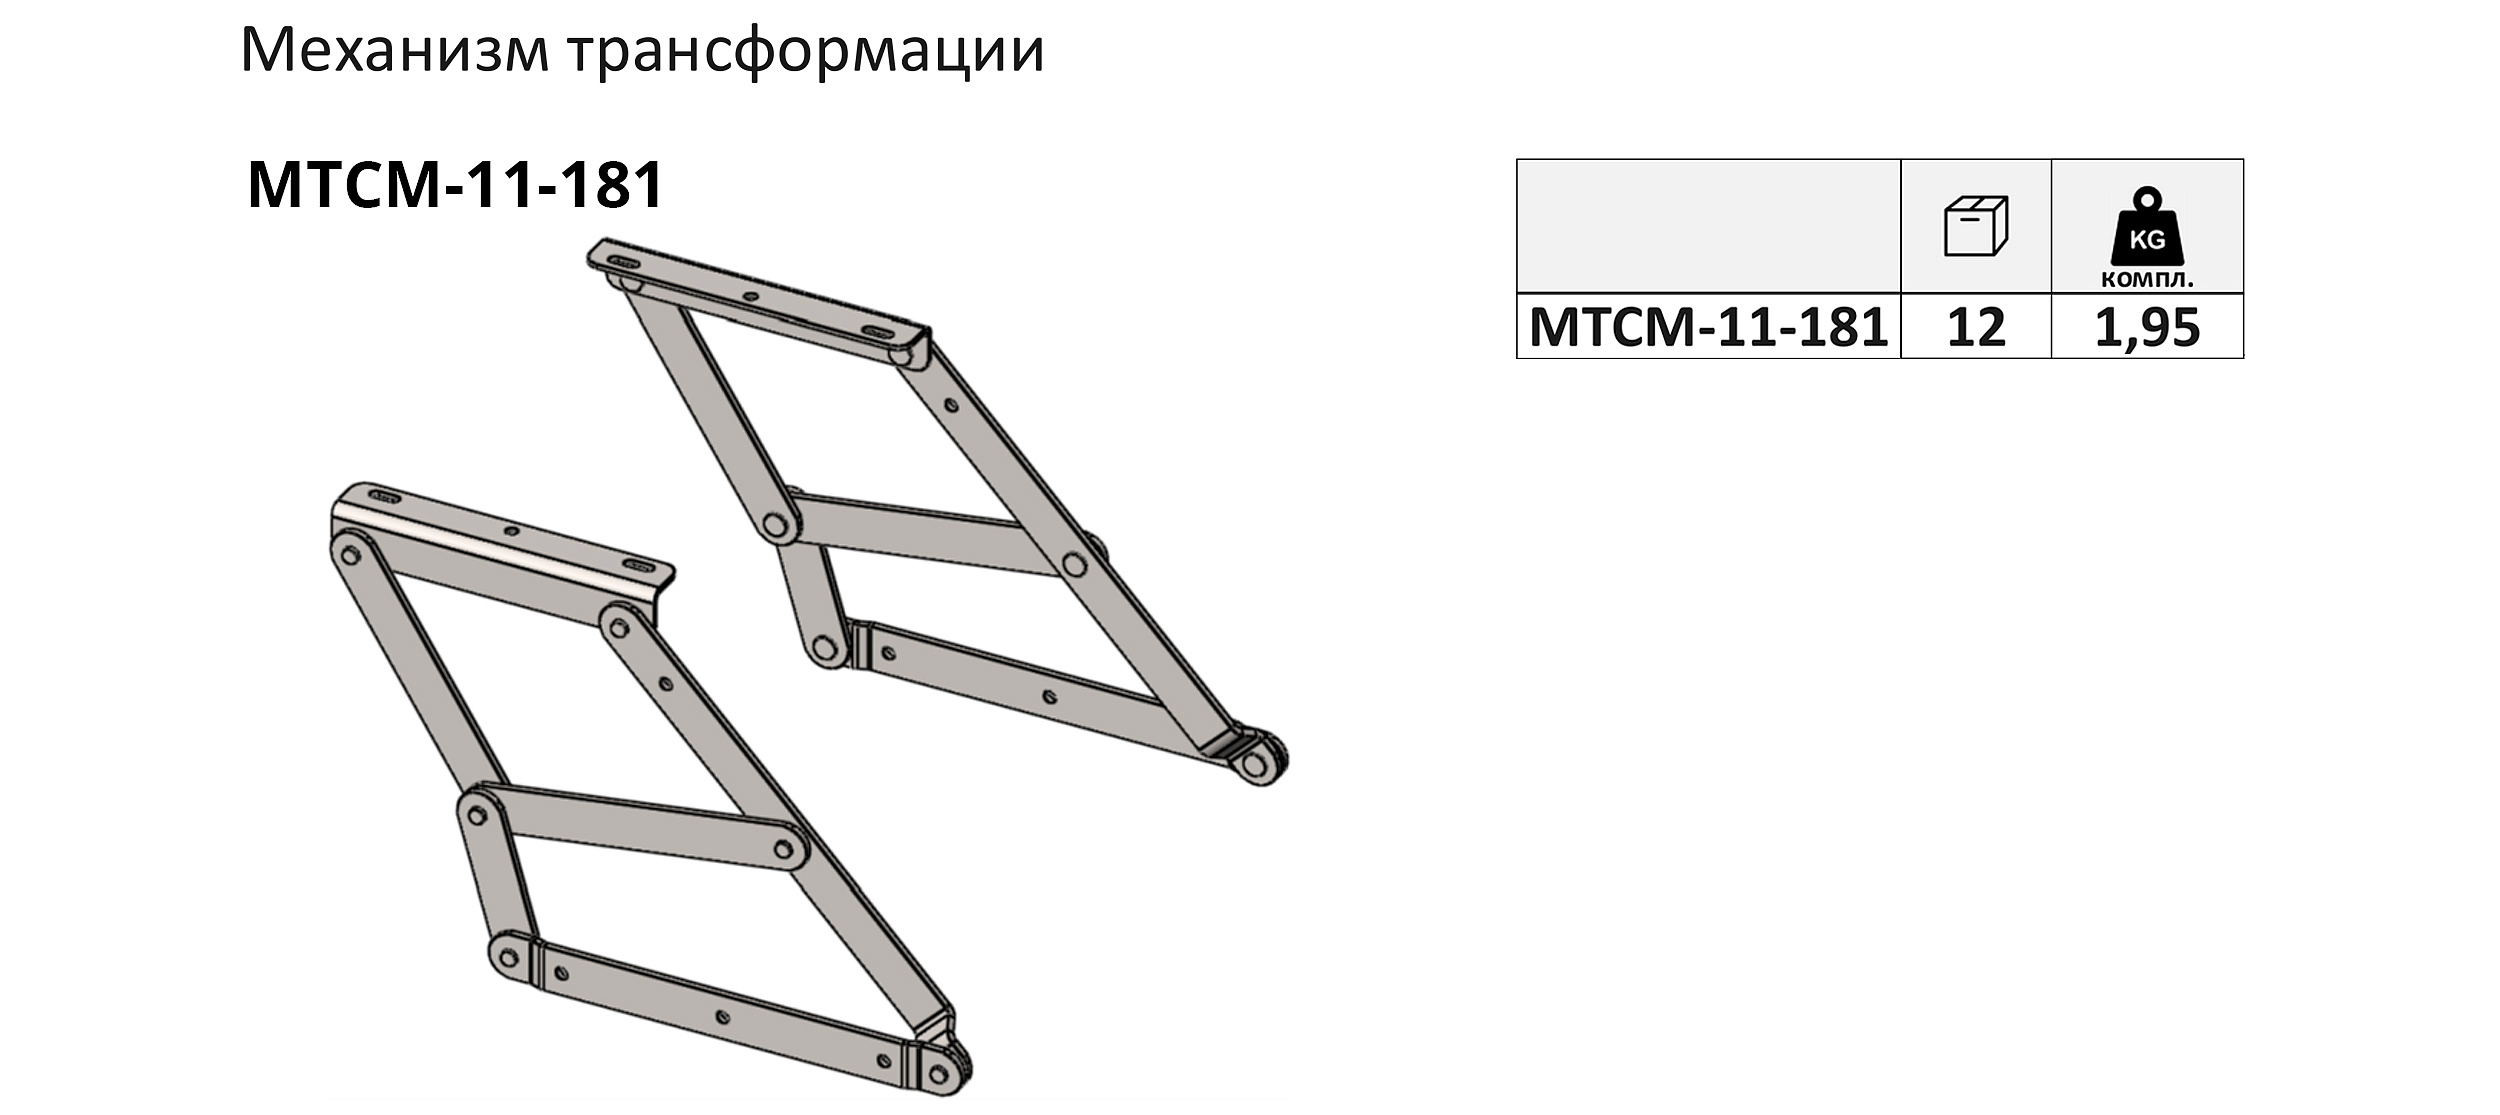 МТСМ-11-181